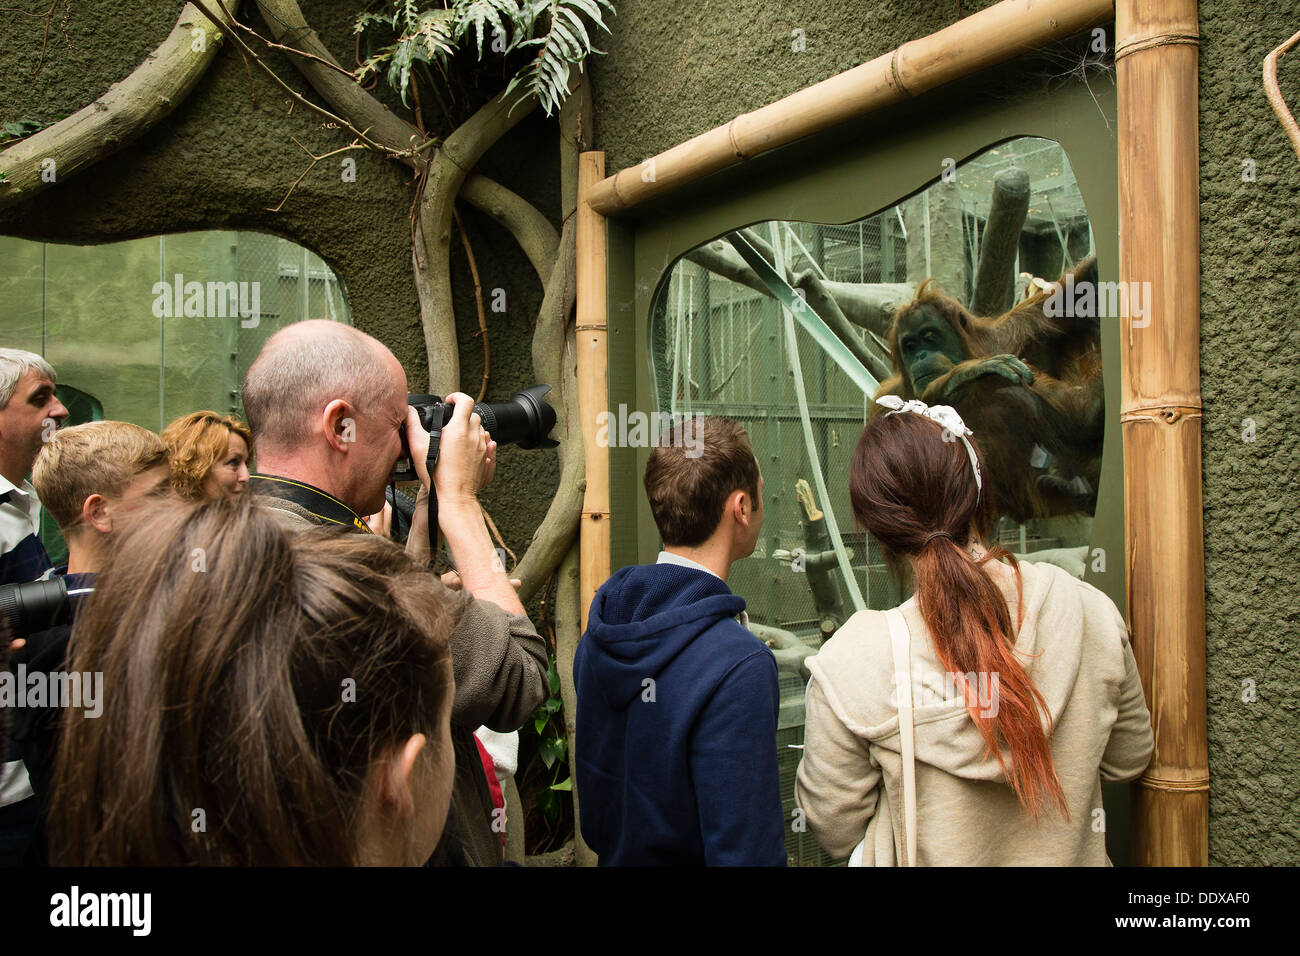 Viendo a la gente pasar y fotografiar un orangután en su recinto en el Zoológico de Chester, Foto de stock